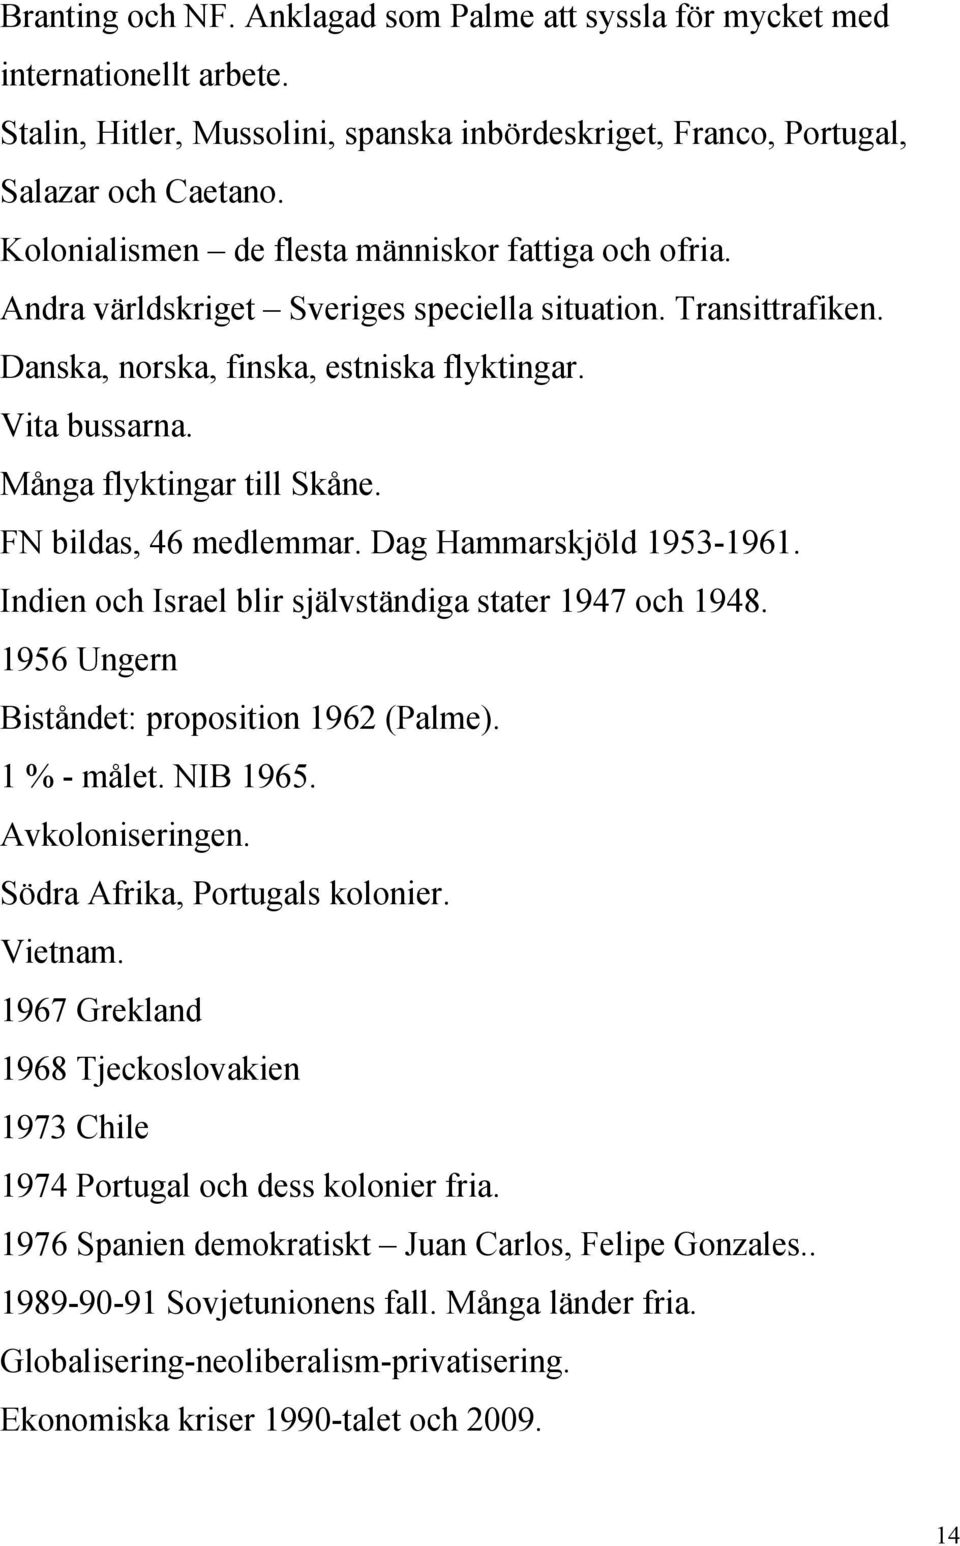 Många flyktingar till Skåne. FN bildas, 46 medlemmar. Dag Hammarskjöld 1953-1961. Indien och Israel blir självständiga stater 1947 och 1948. 1956 Ungern Biståndet: proposition 1962 (Palme).